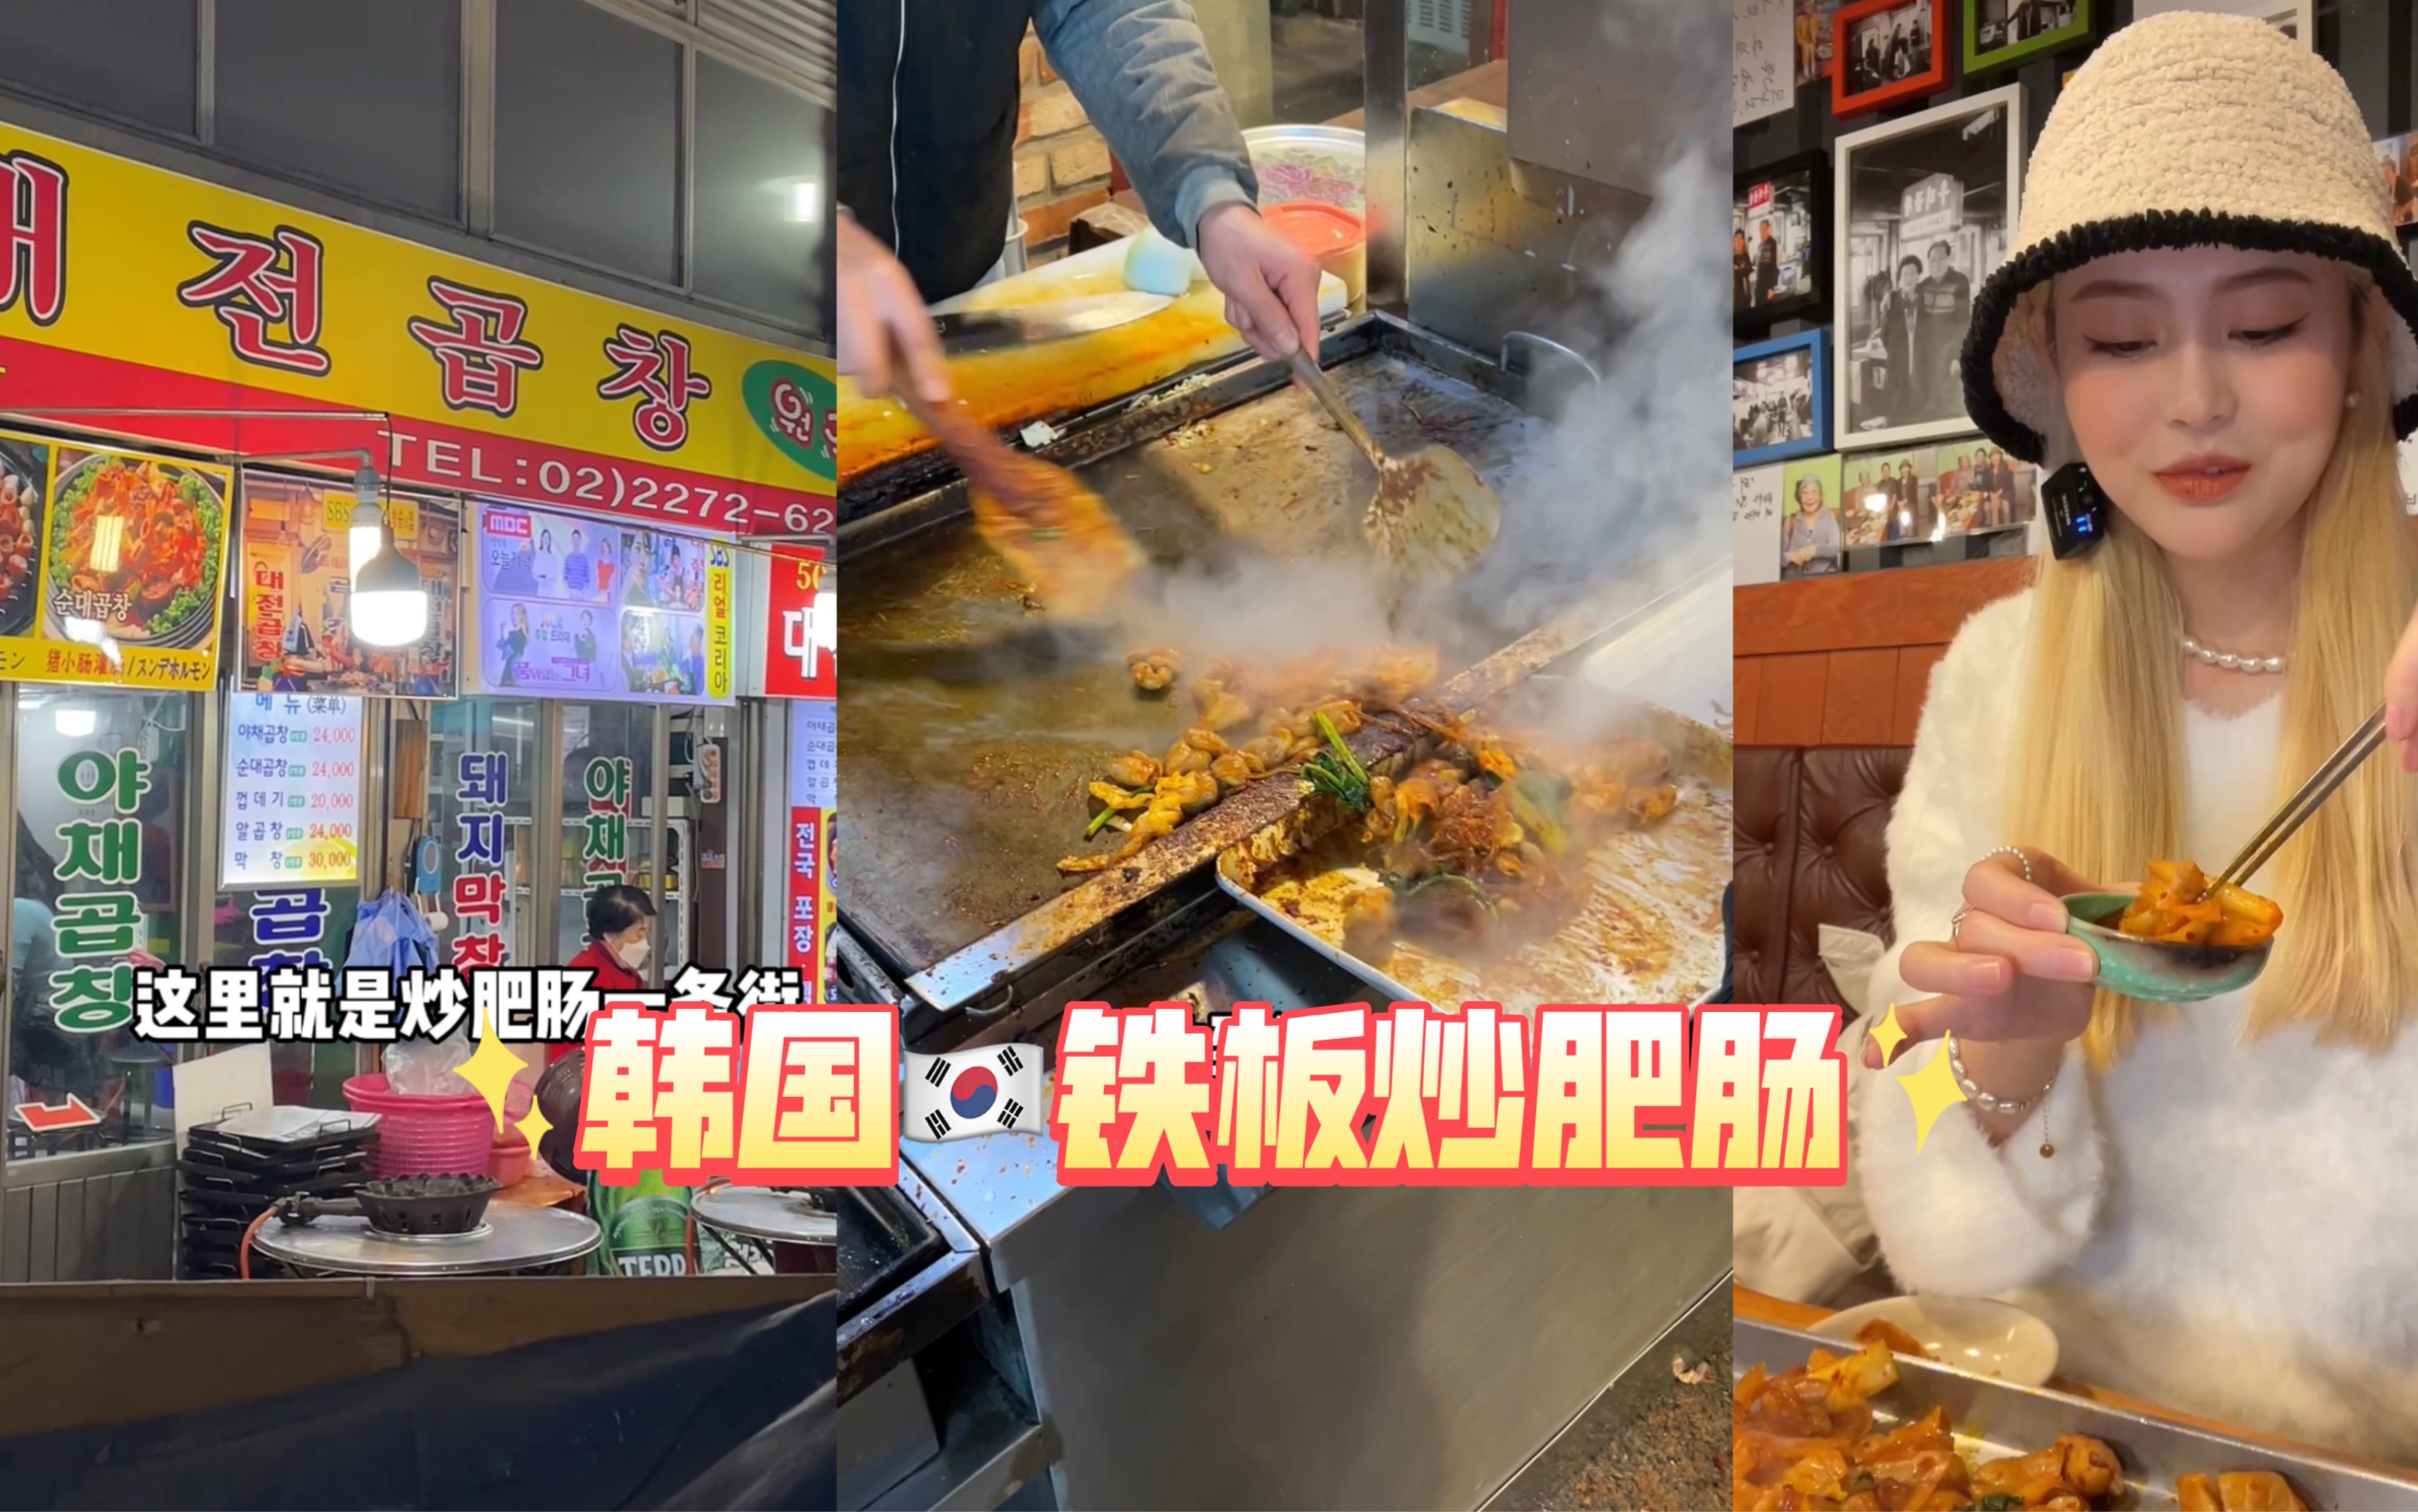 2023老头爱马仕酸豇豆炒饭(丰富路店)美食餐厅,点了红烧肉炒饭+肥肠 味道还... 【去哪儿攻略】